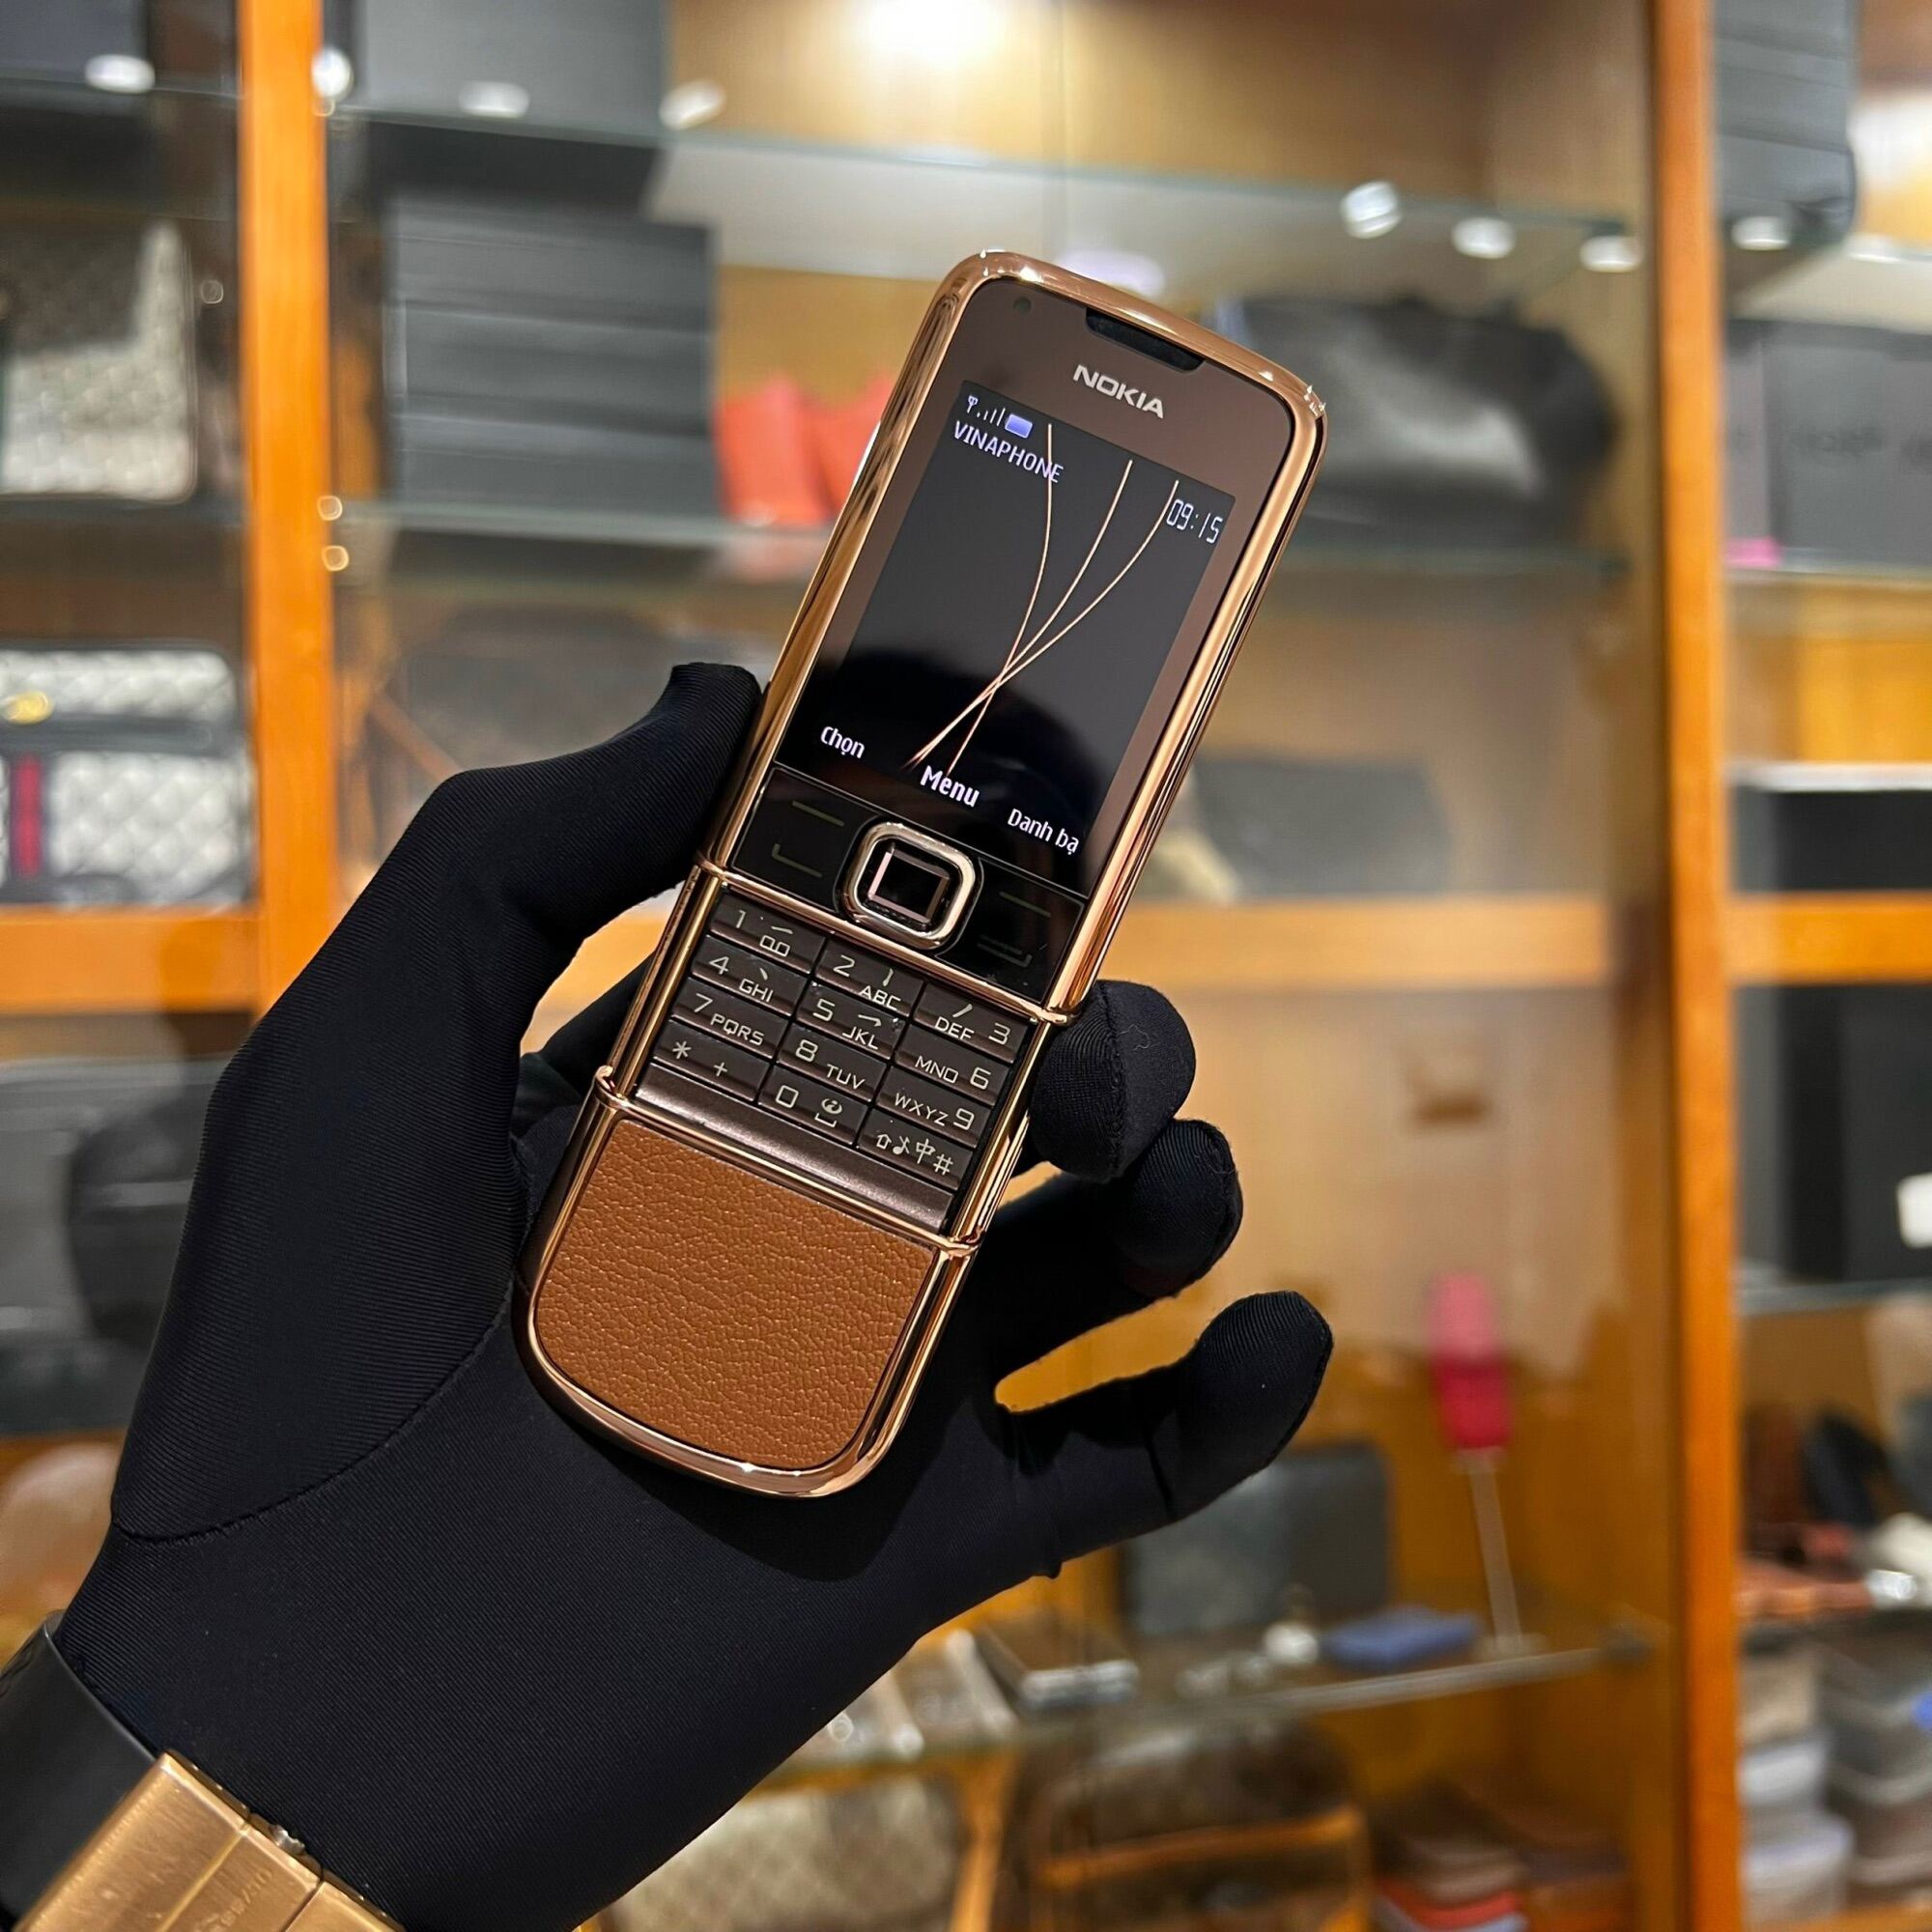 Nokia 8800 zin mạ vàng hồng